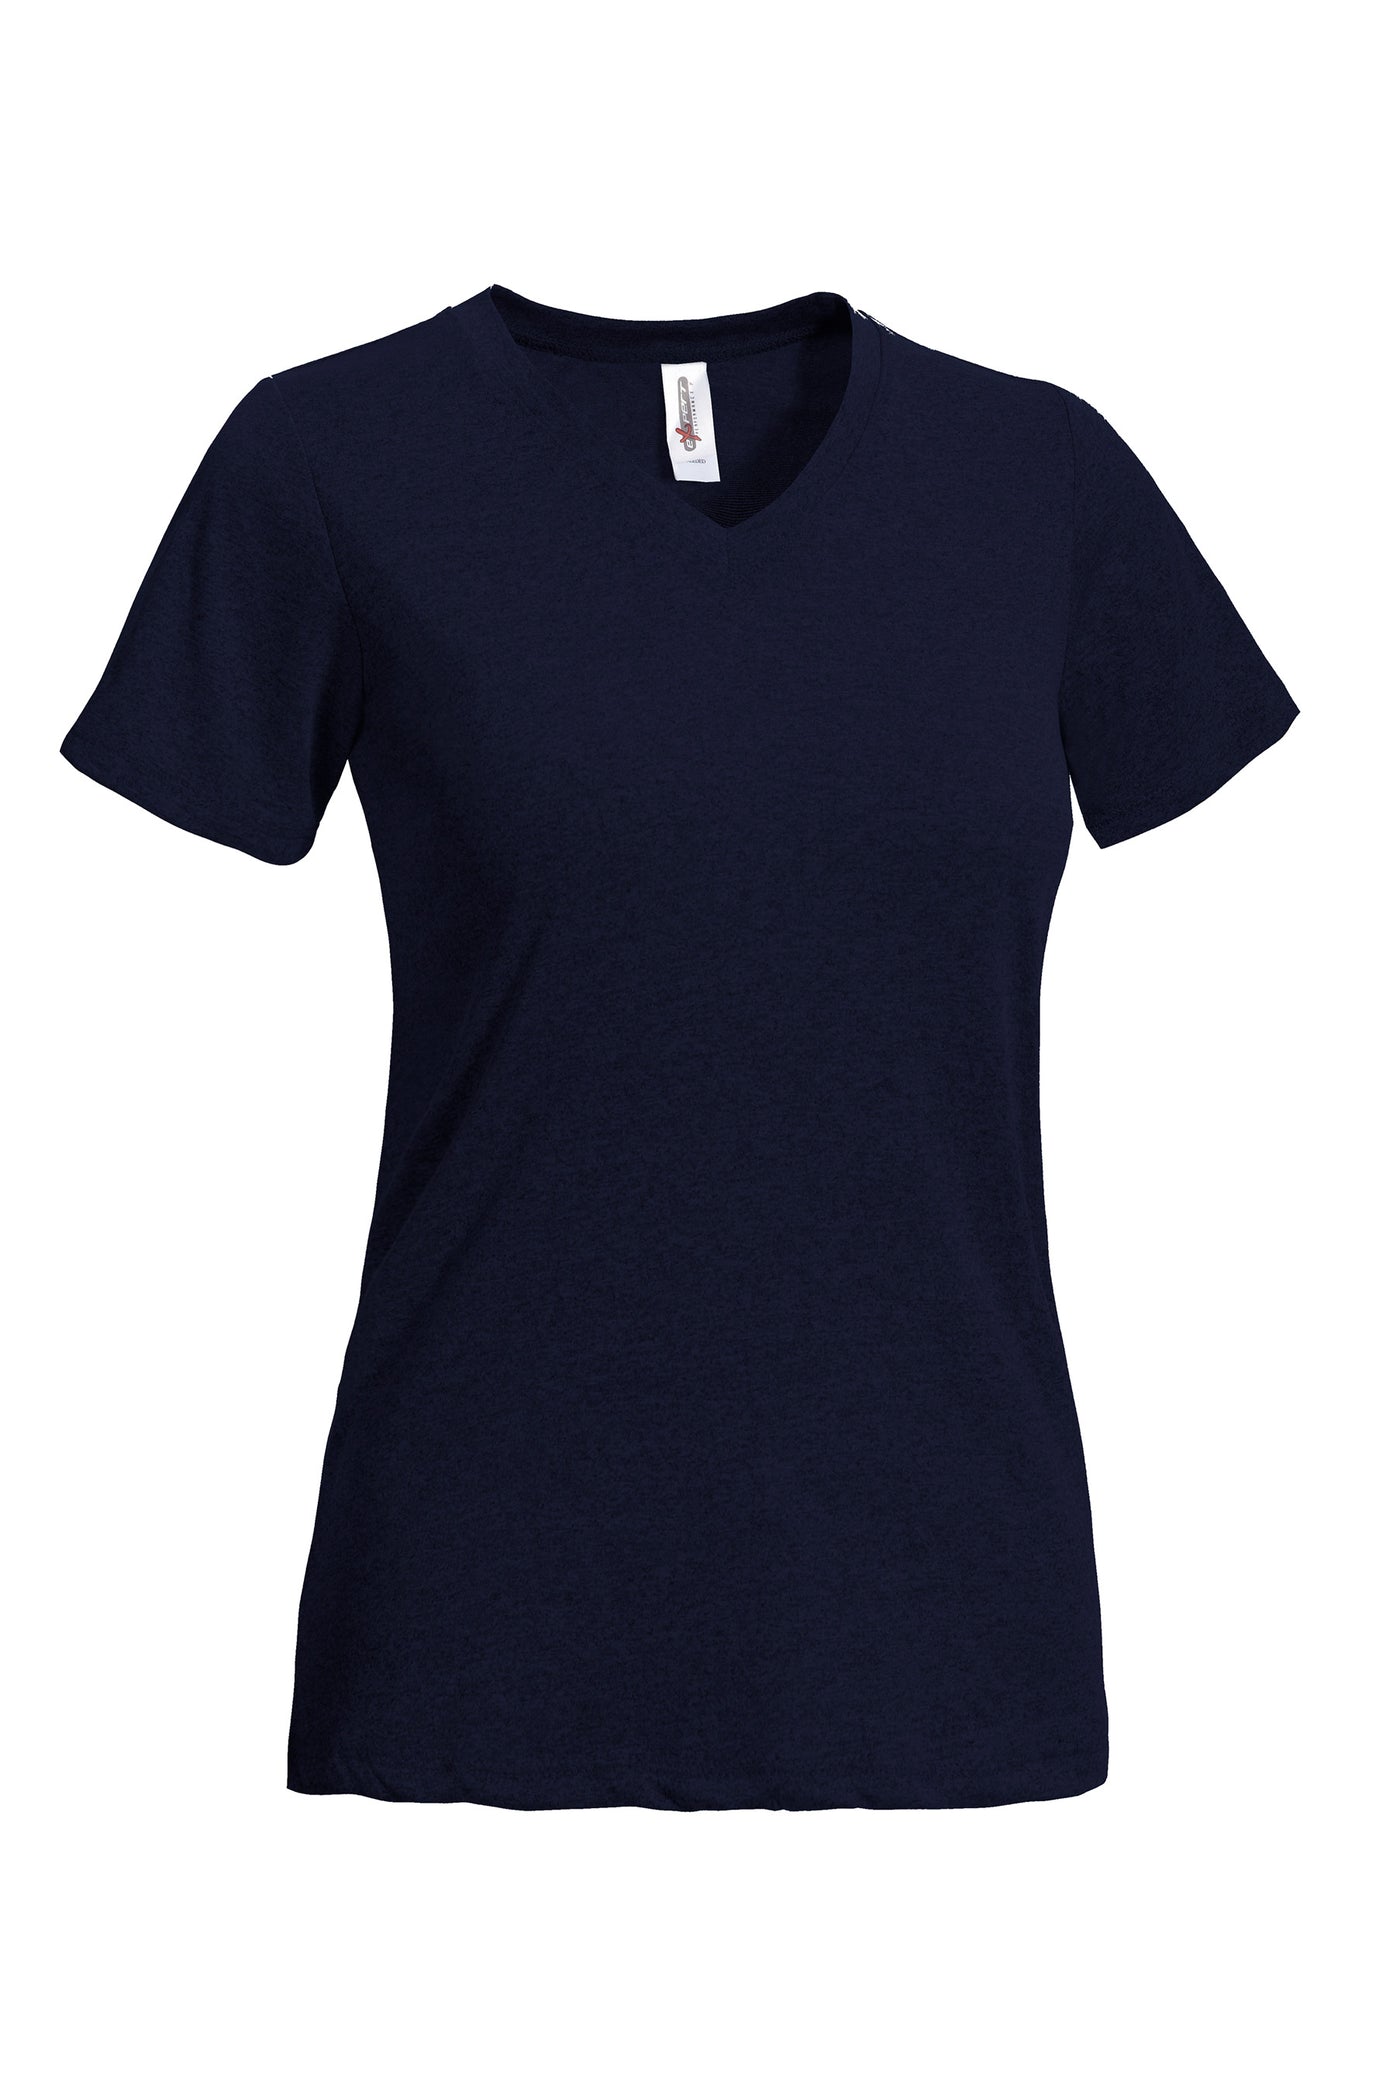 Expert Brand Women's Natural Feel V-Neck T-Shirt in Navy#color_navy